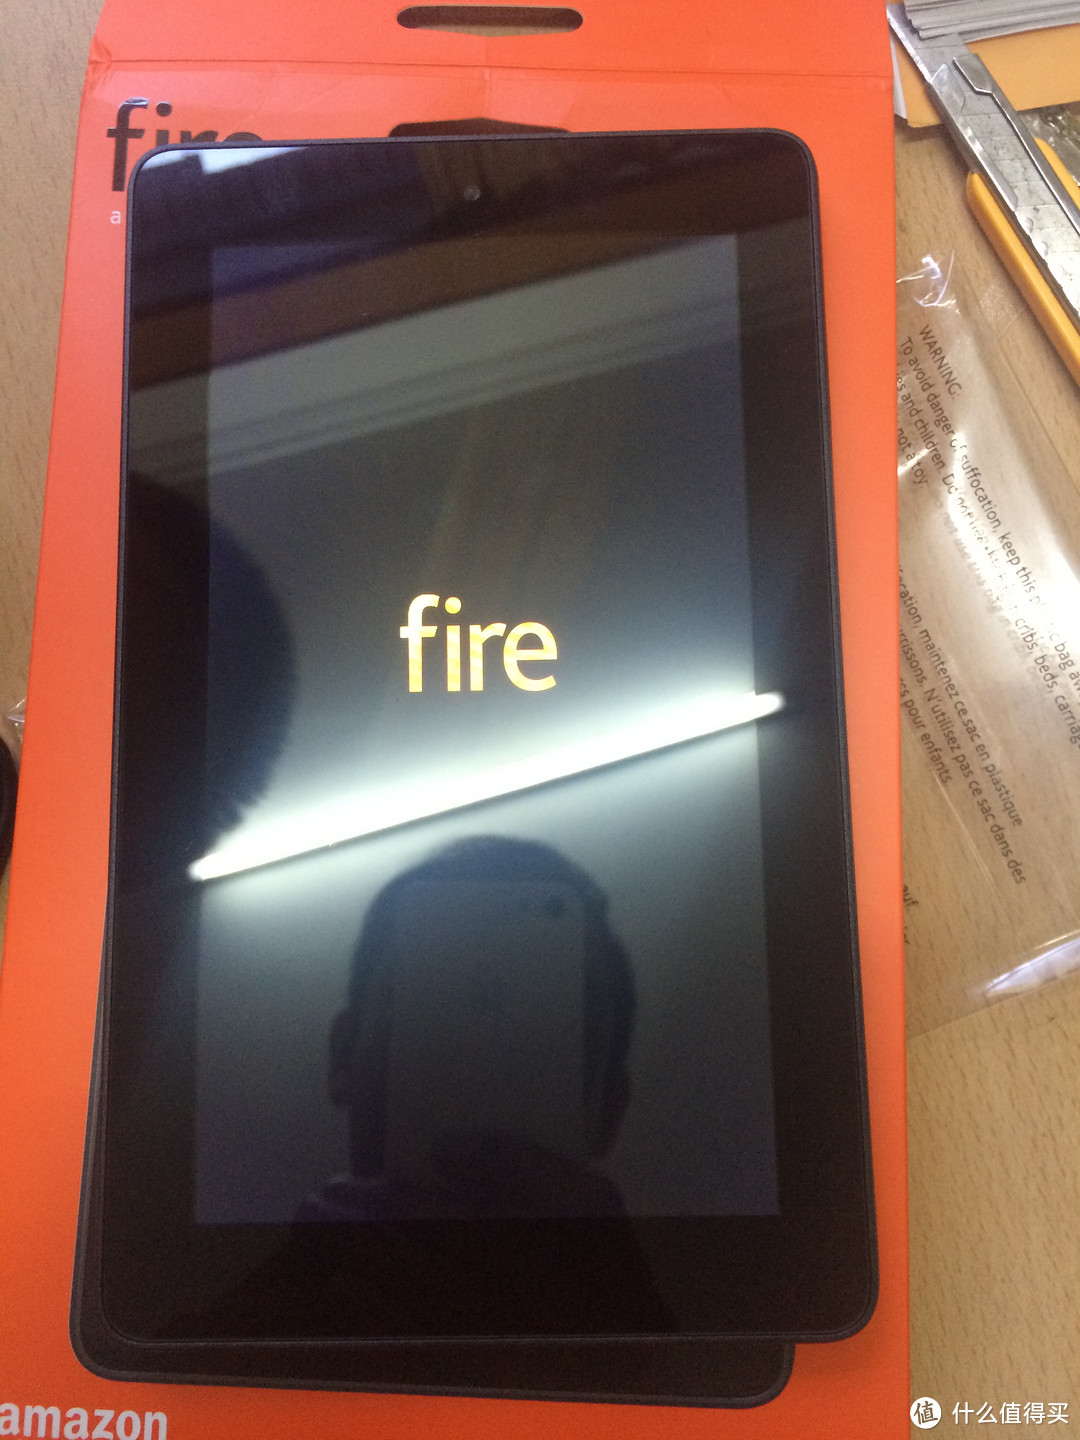 特价 Kindle Fire & tommy hilfiger钱包